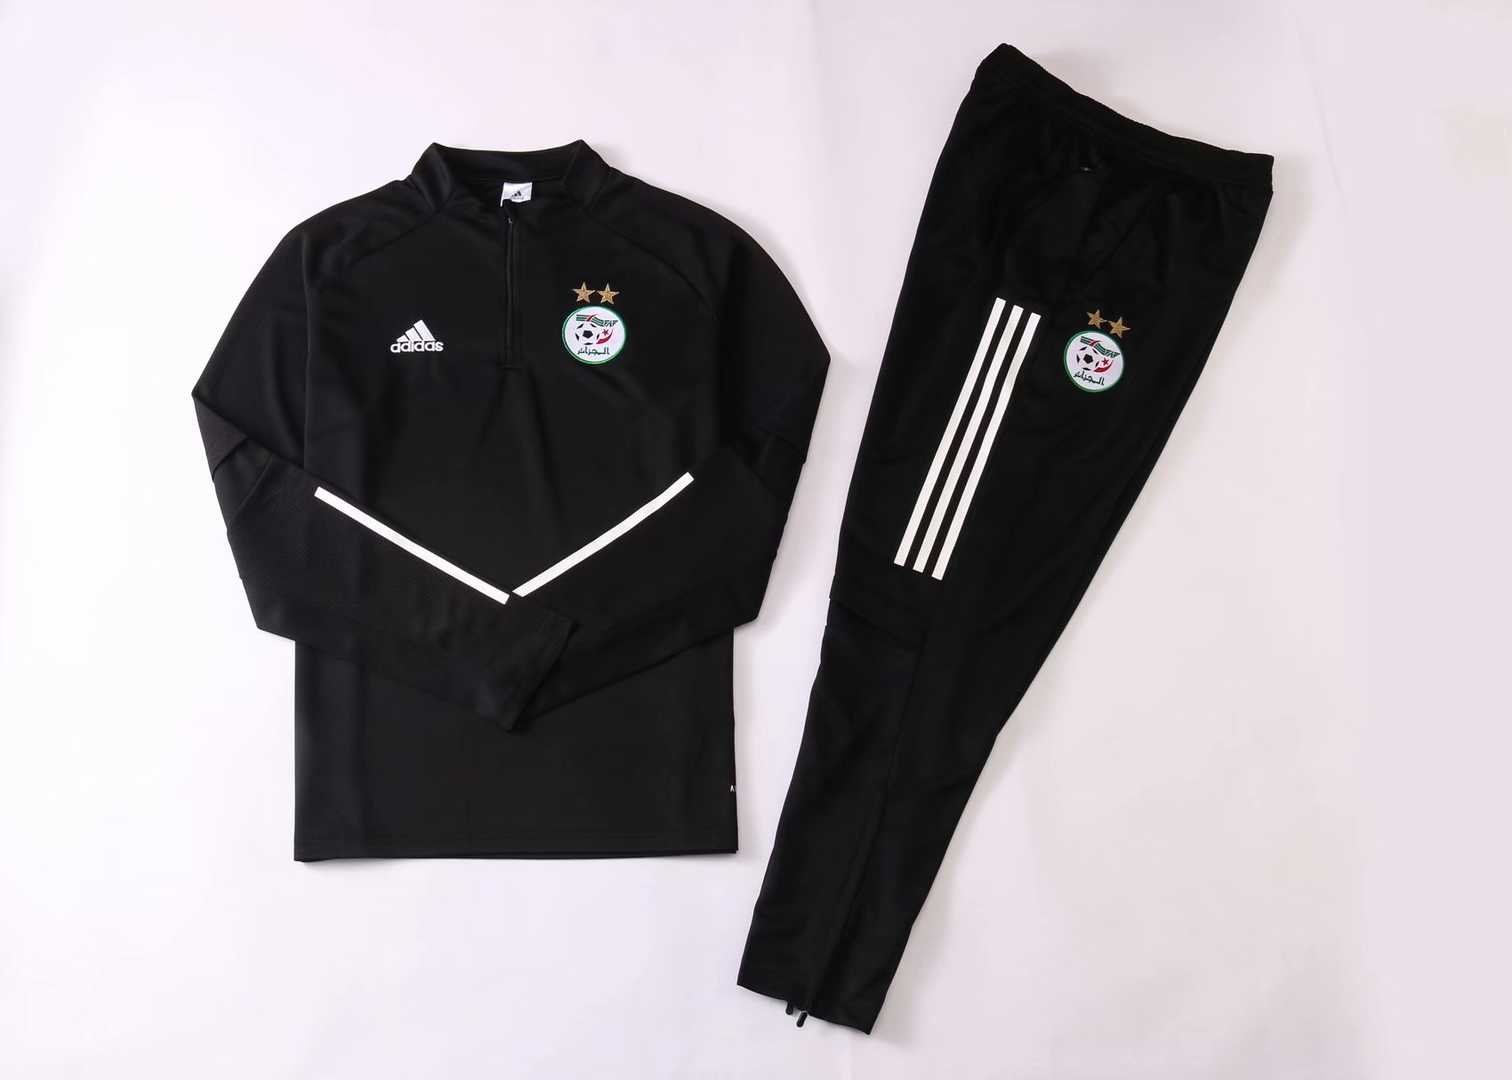 2020/21 Algeria Black Mens Soccer Training Suit